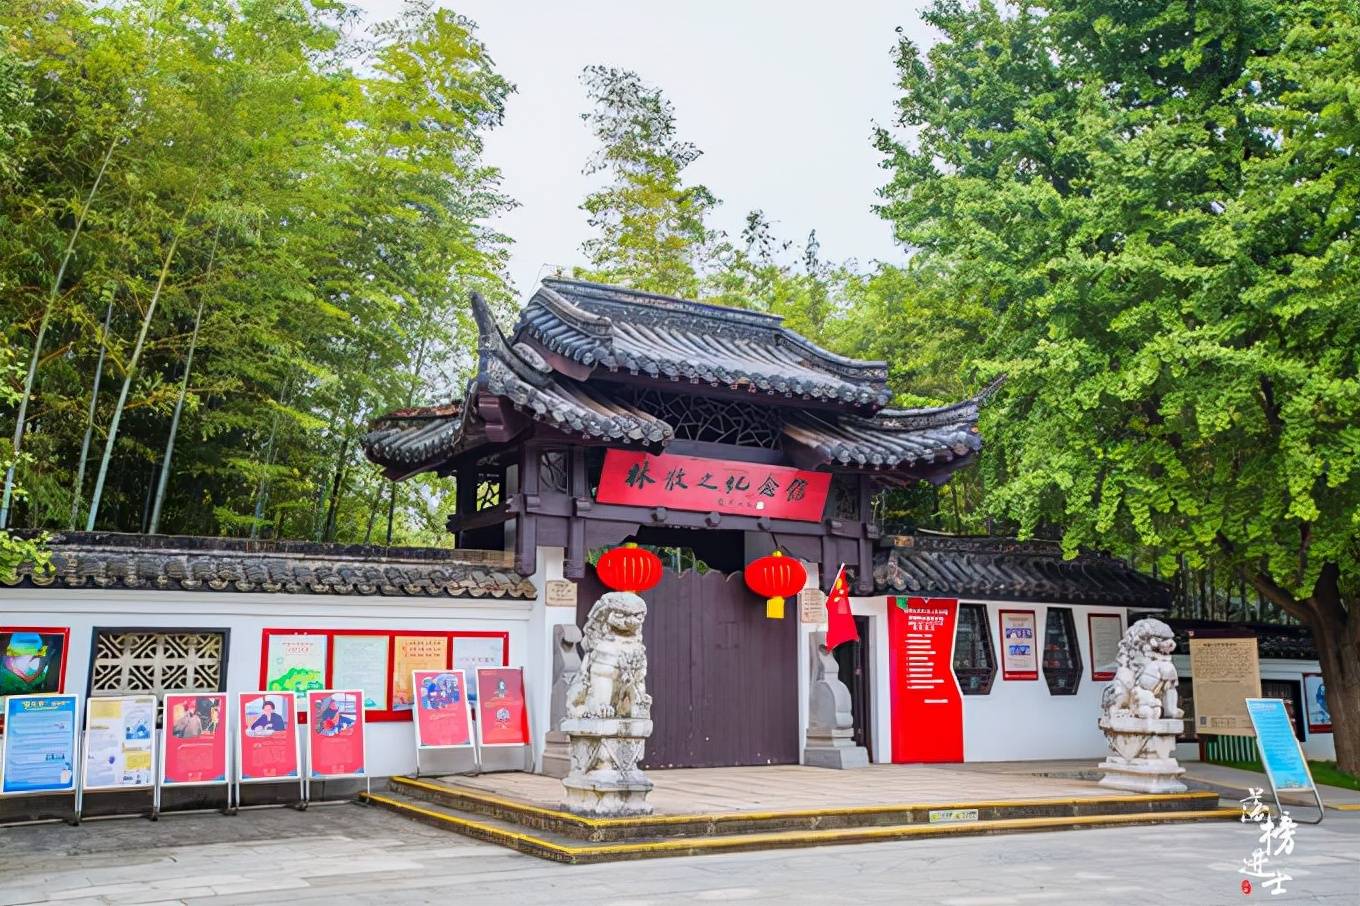 南京求雨山文化名人纪念馆，国内难得一见的纪念馆群，充满诗意